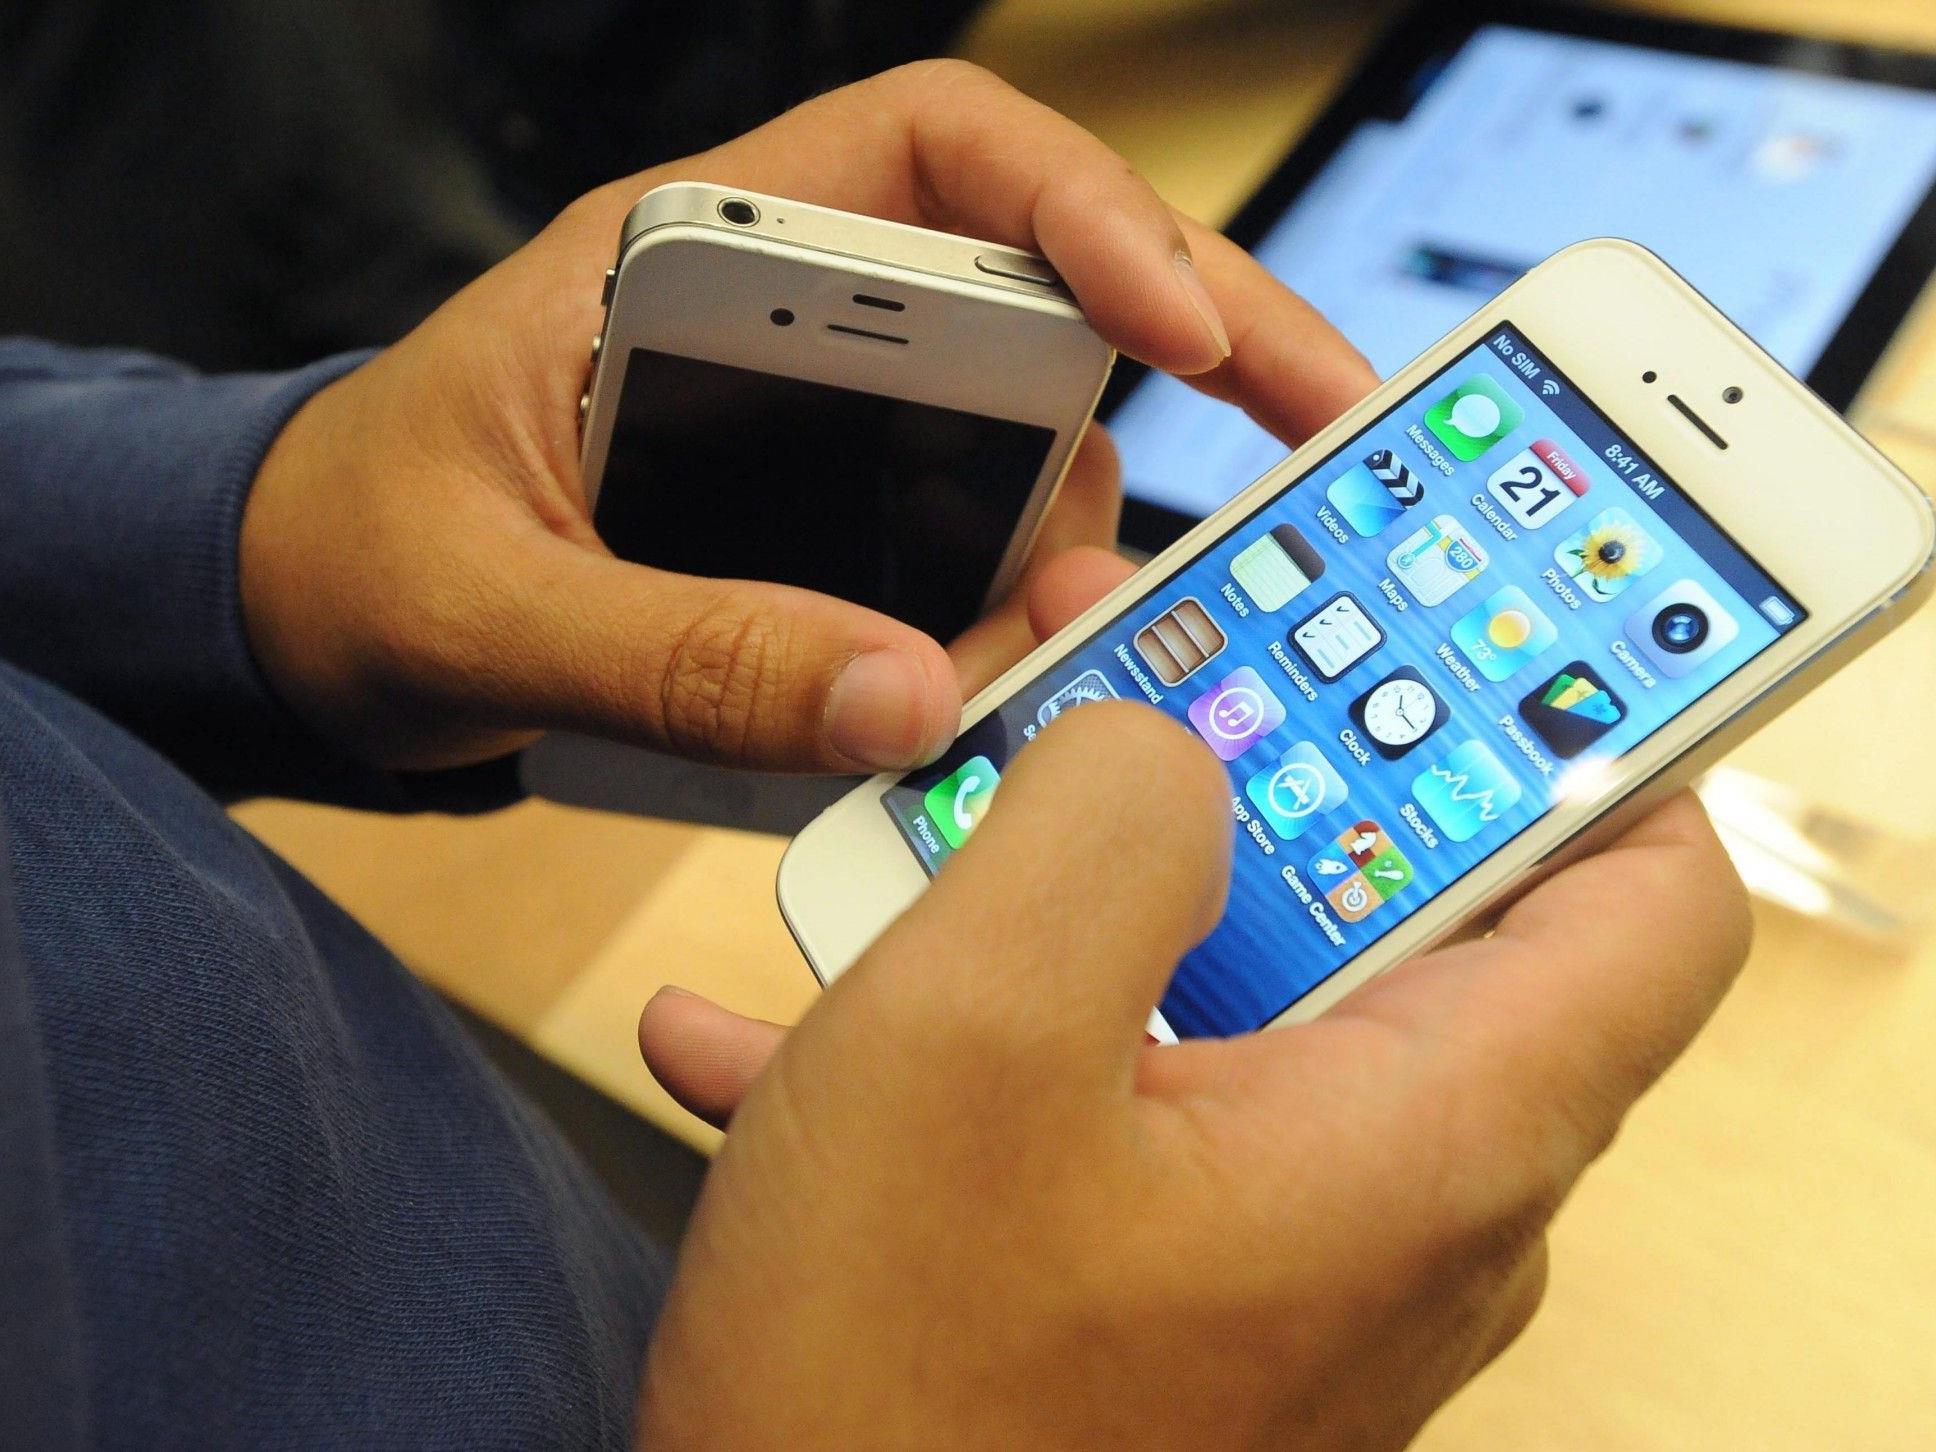 Kundenbeschwerden häufen sich - Apple klopft Foxconn auf die Finger.